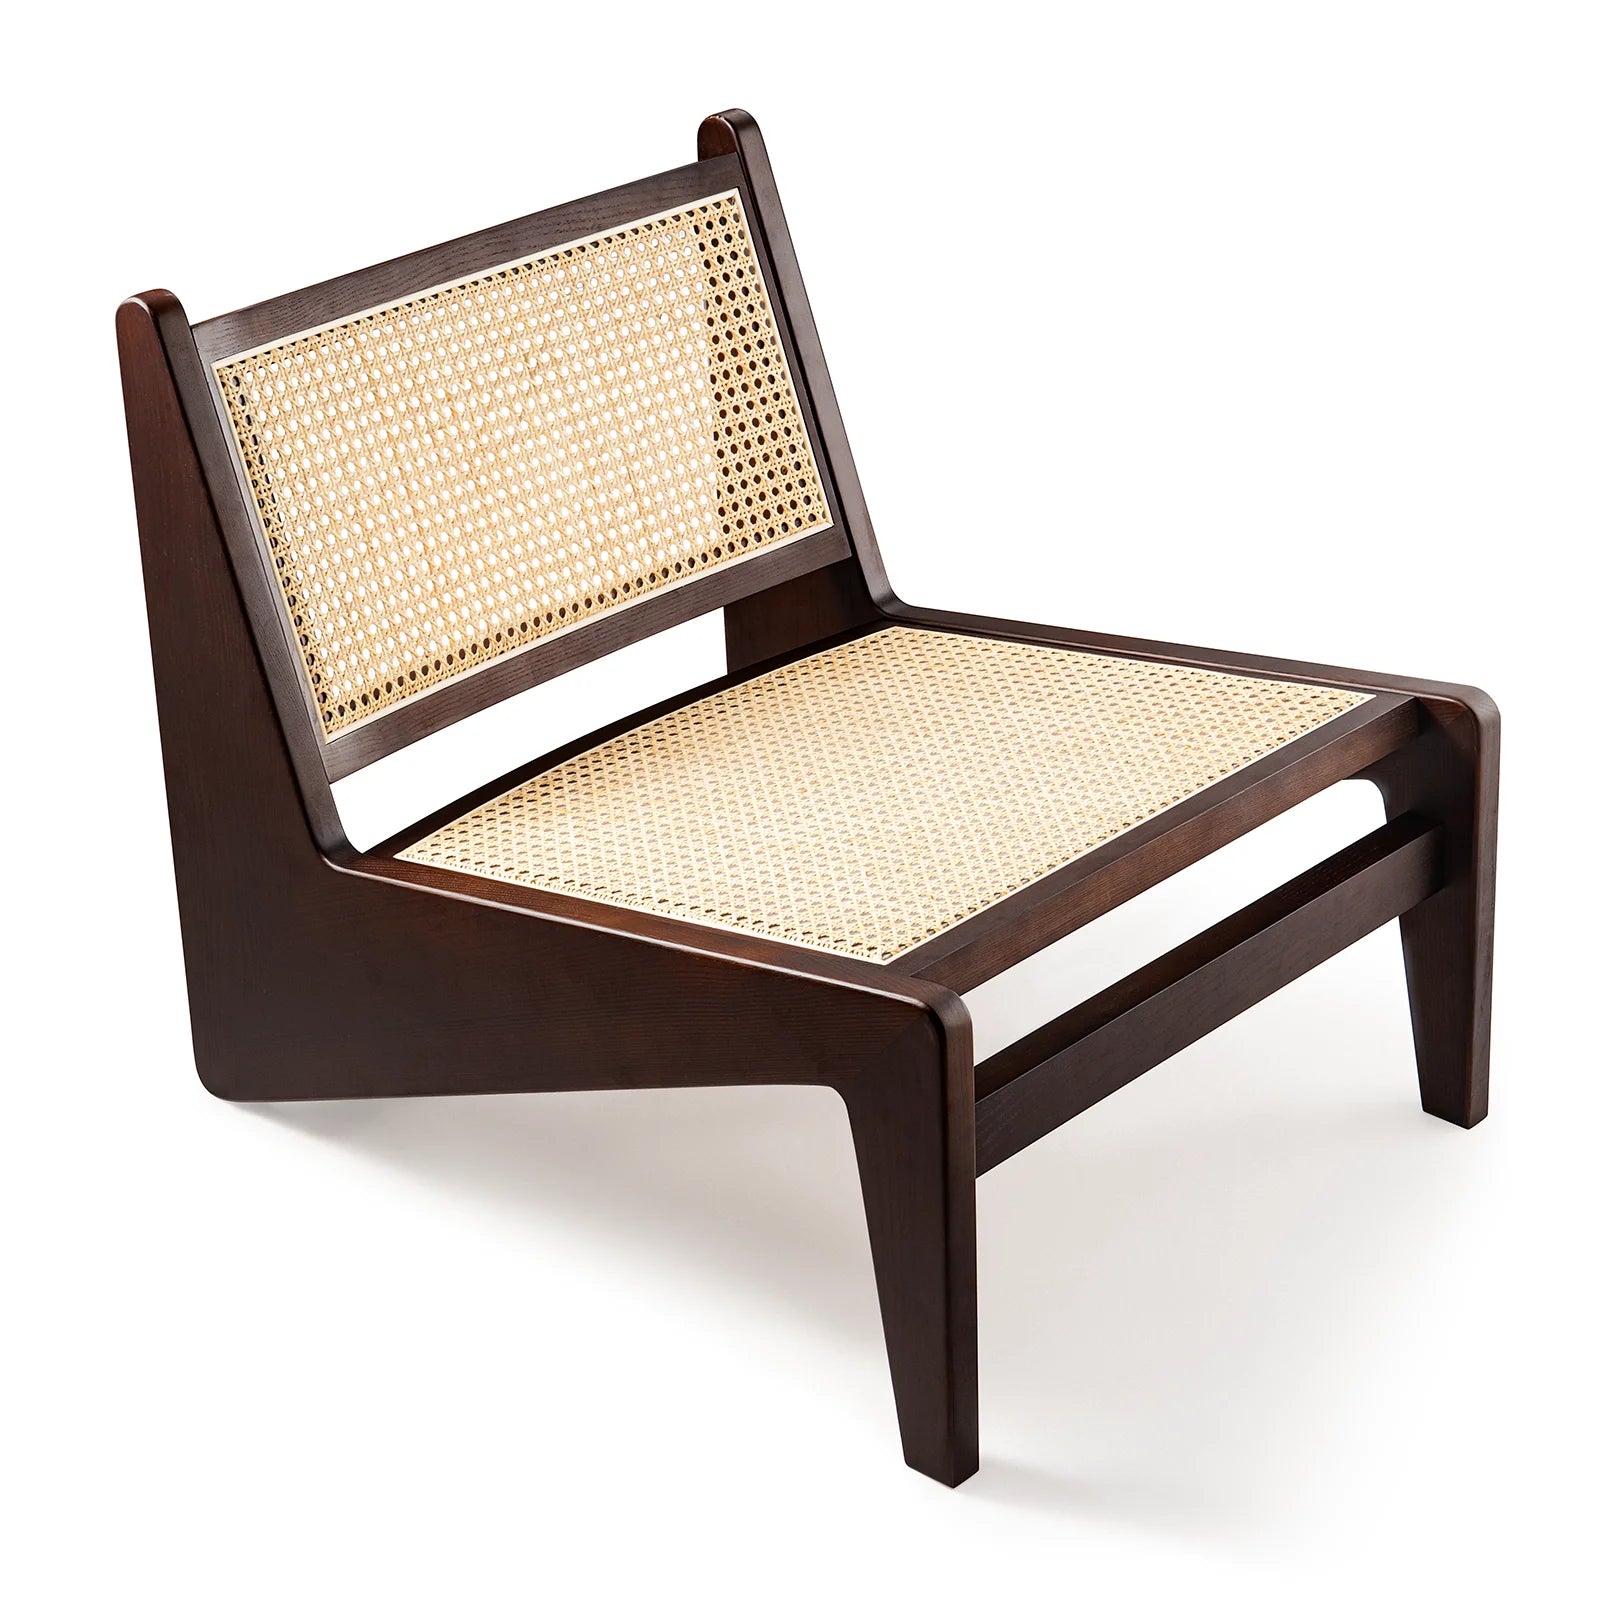 CORX Designs - Chandigarh Kangaroo Chair - Review